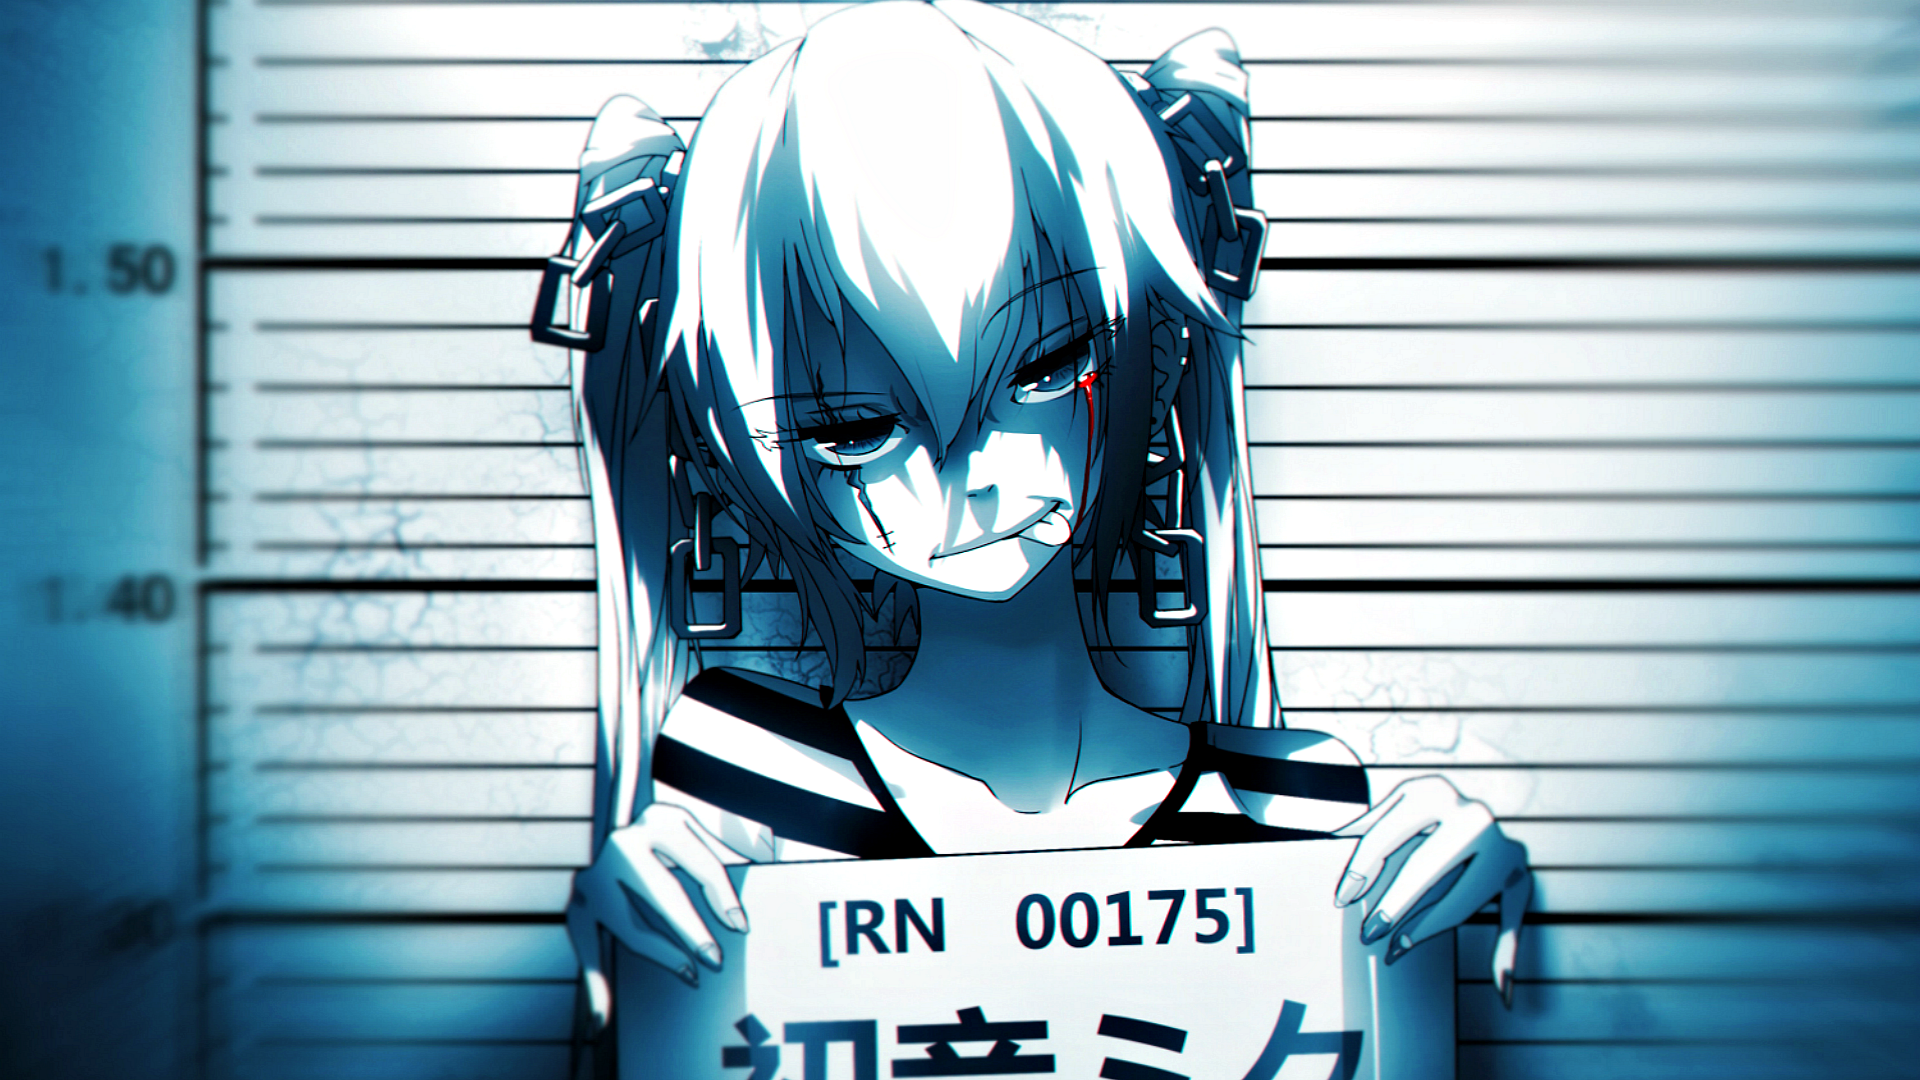 Little Bad Girl Anime - HD Wallpaper 